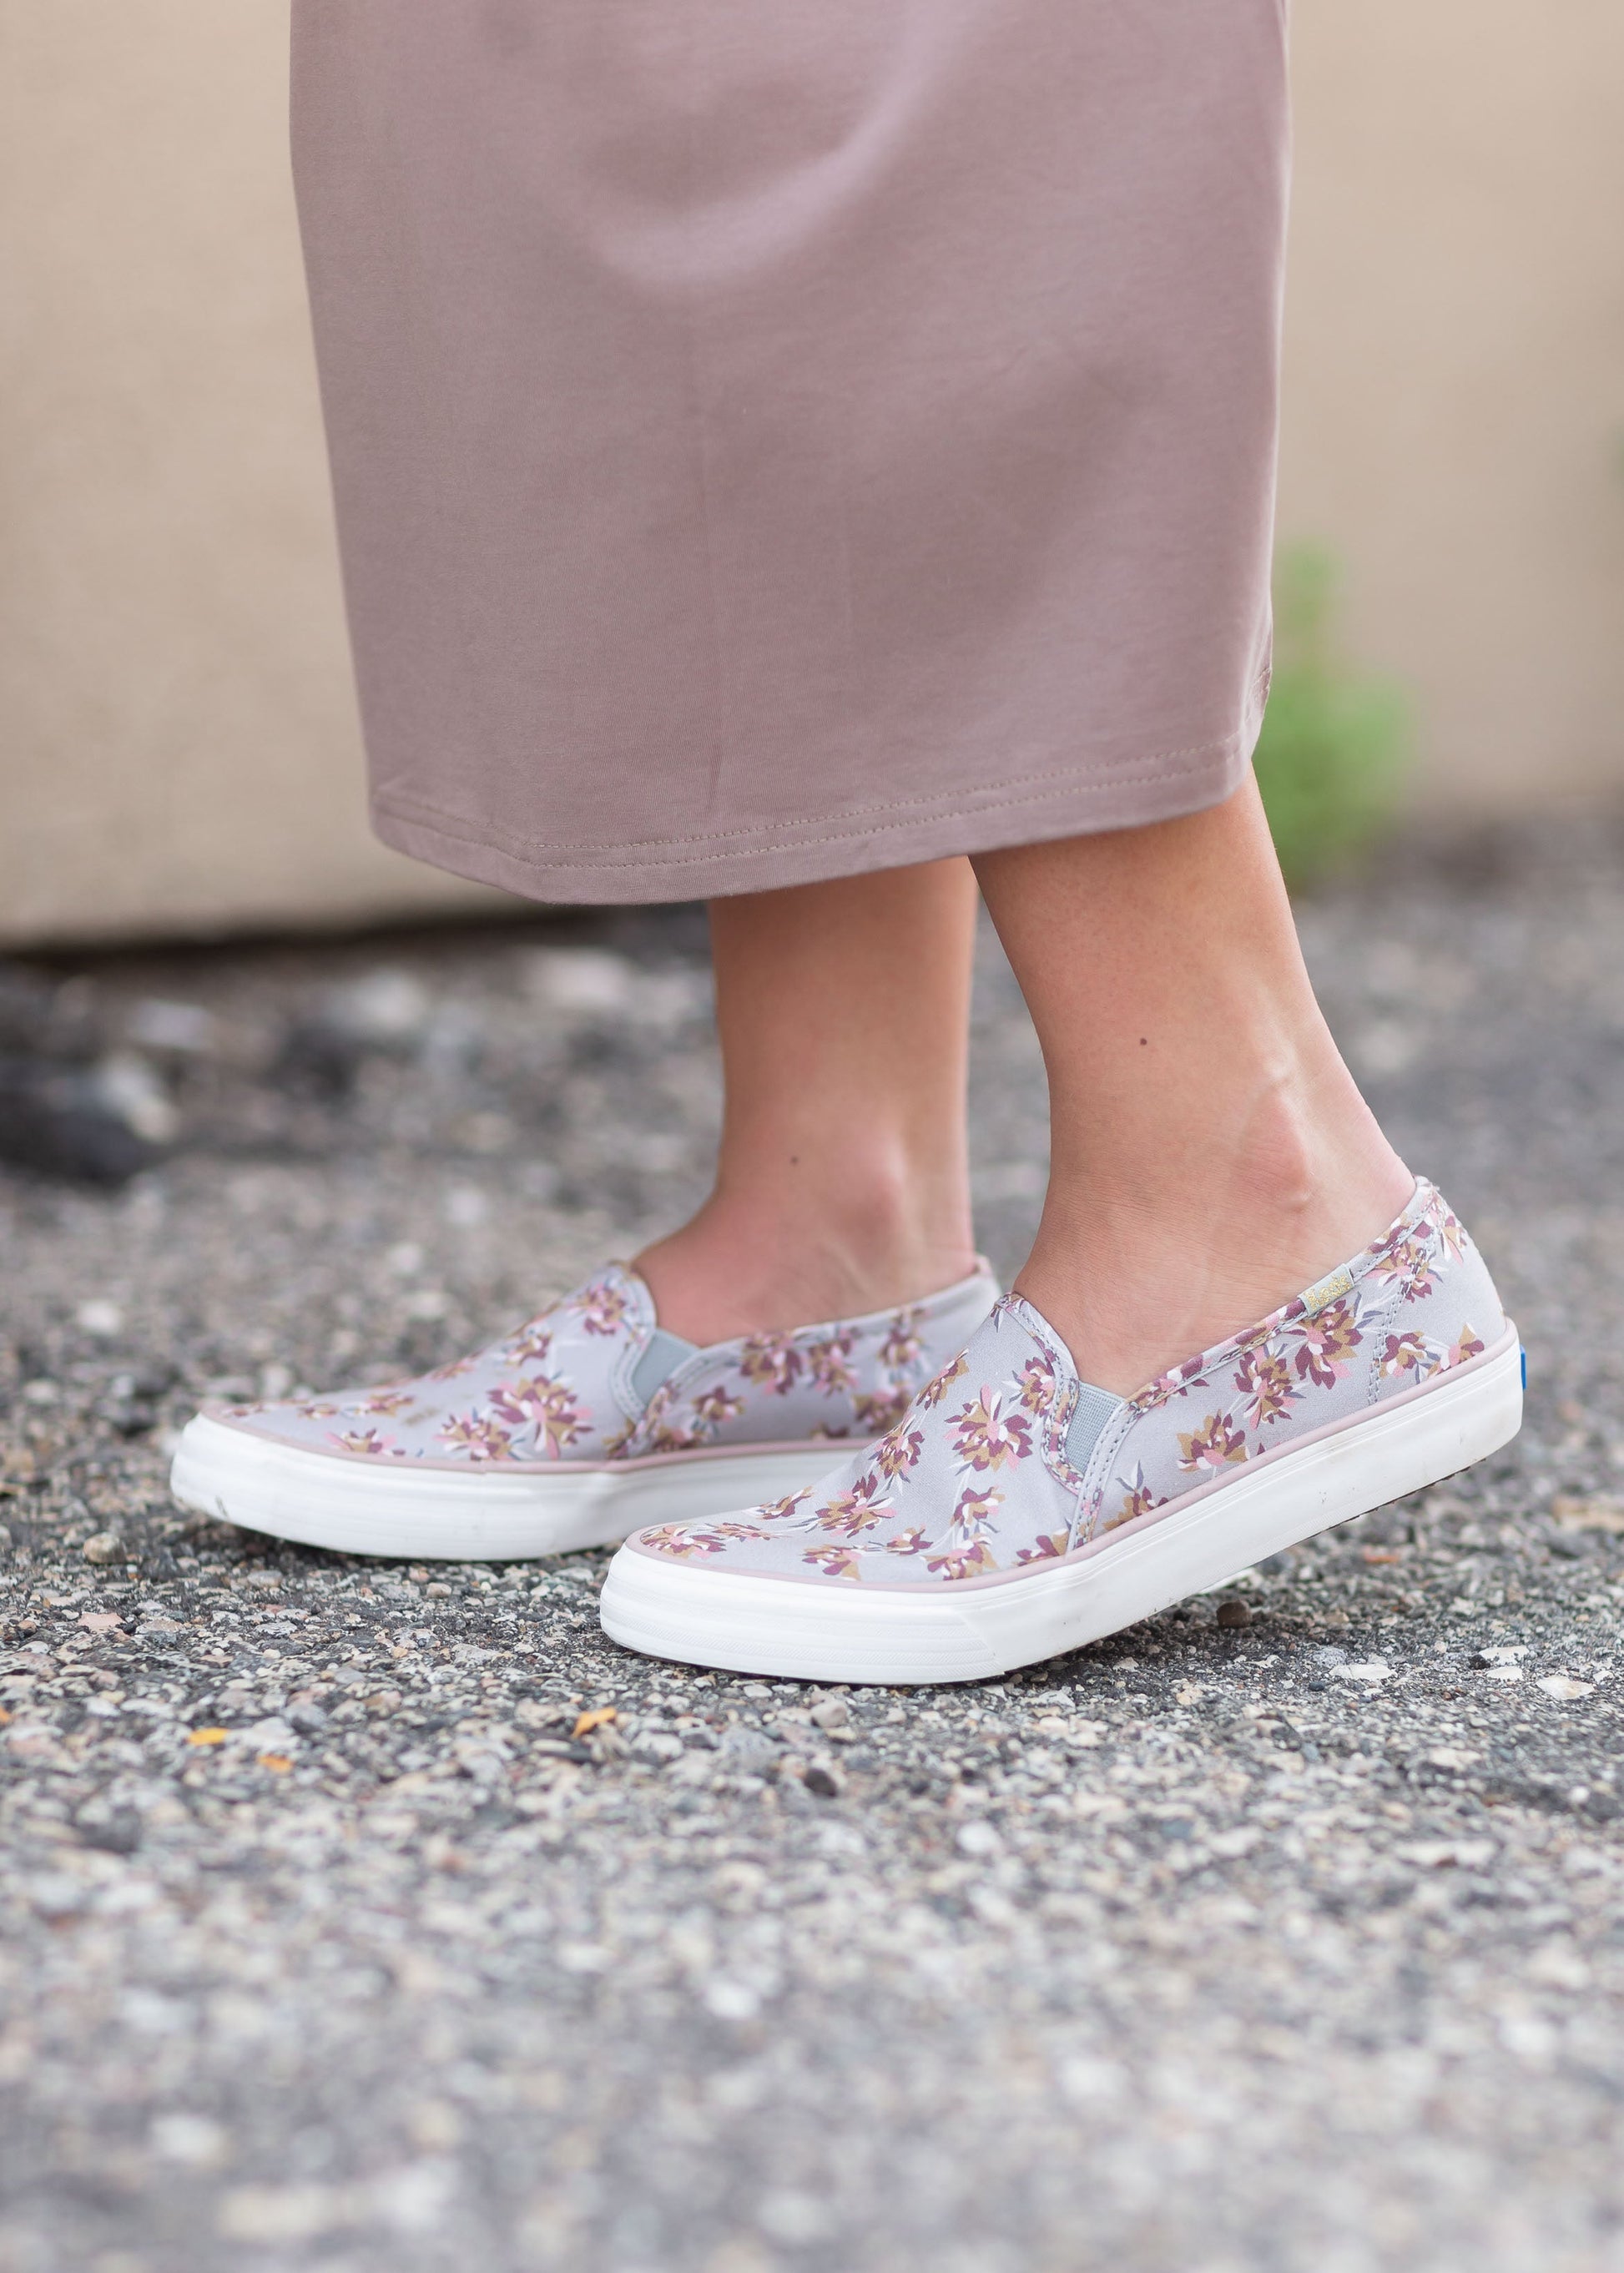 Keds® Women's Double Decker Floral Sneaker Shoes